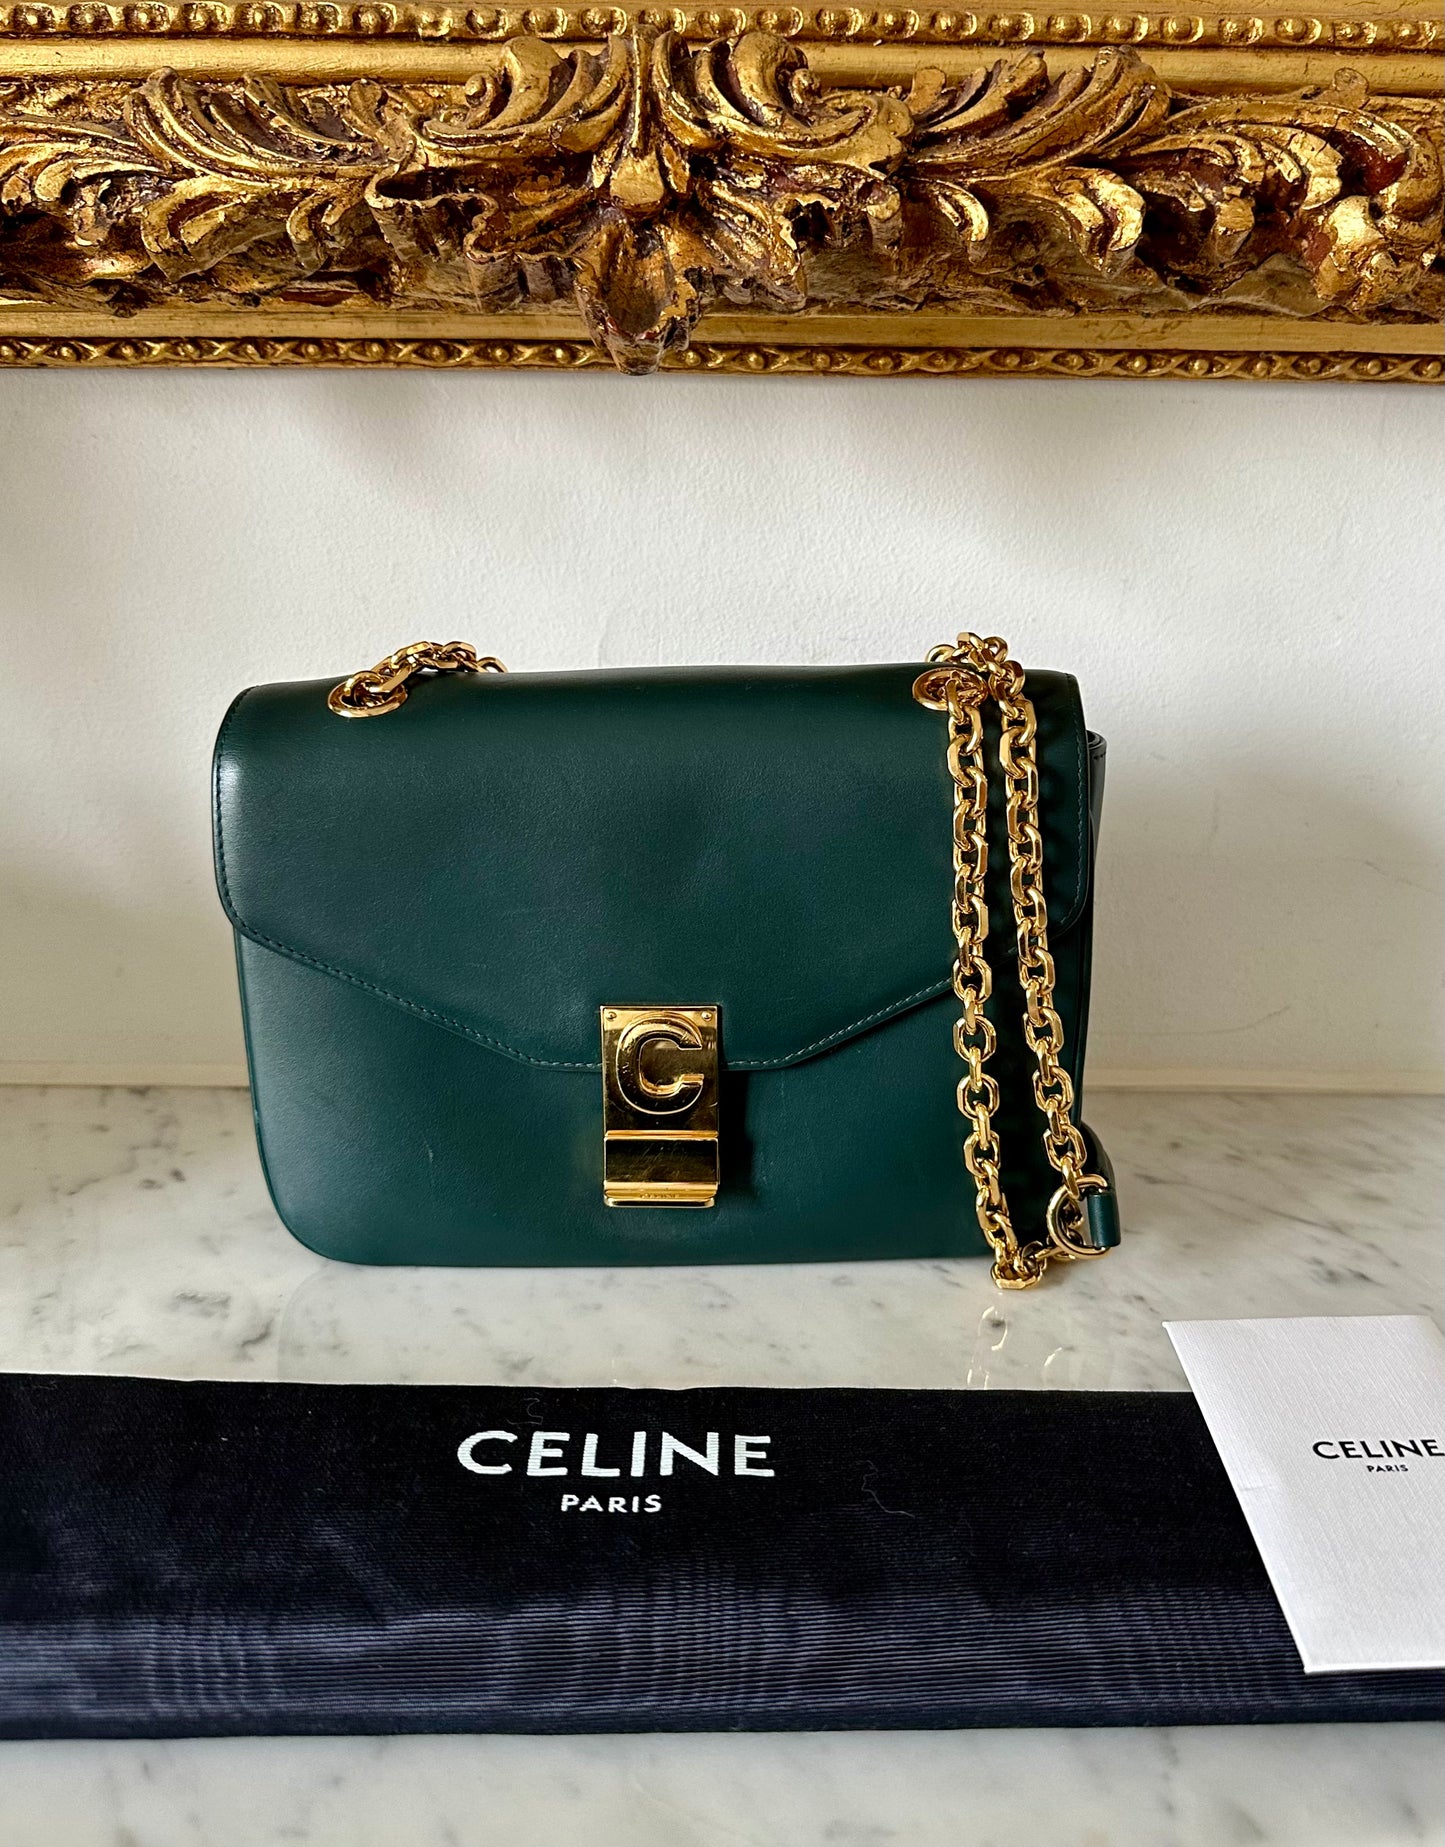 Celine C bag